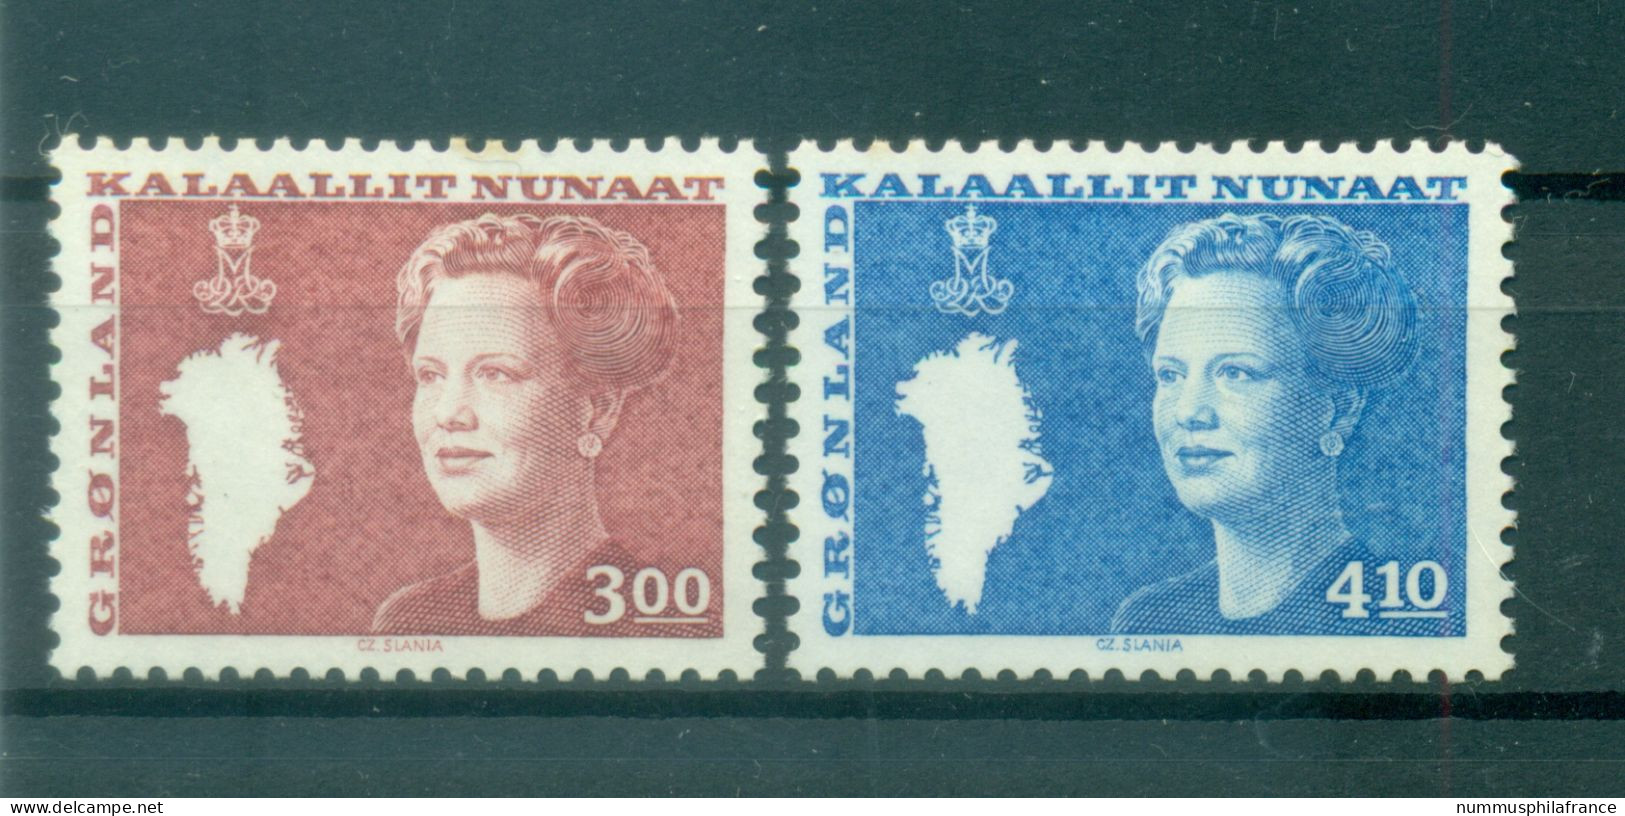 Groenland   1988 - Y & T N. 167/68 - Série Courante  (Michel N. 179/80) - Unused Stamps